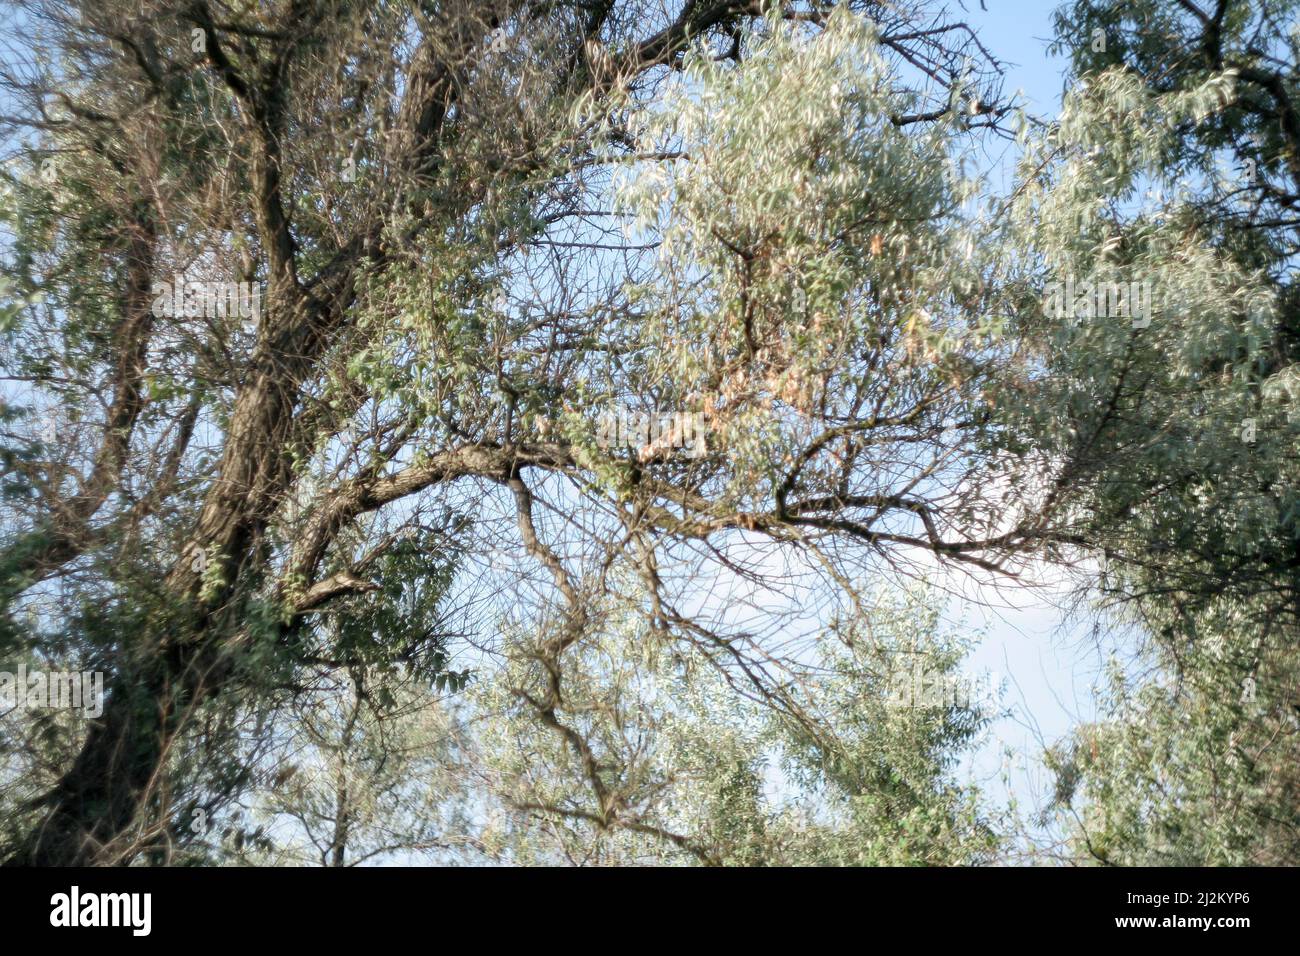 Un magnifico sfondo fatto della corona di un enorme albero di Loch d'argento con pezzi di cielo blu che sbuccia attraverso le foglie. Albero Elaeagnus angustifolia Foto Stock